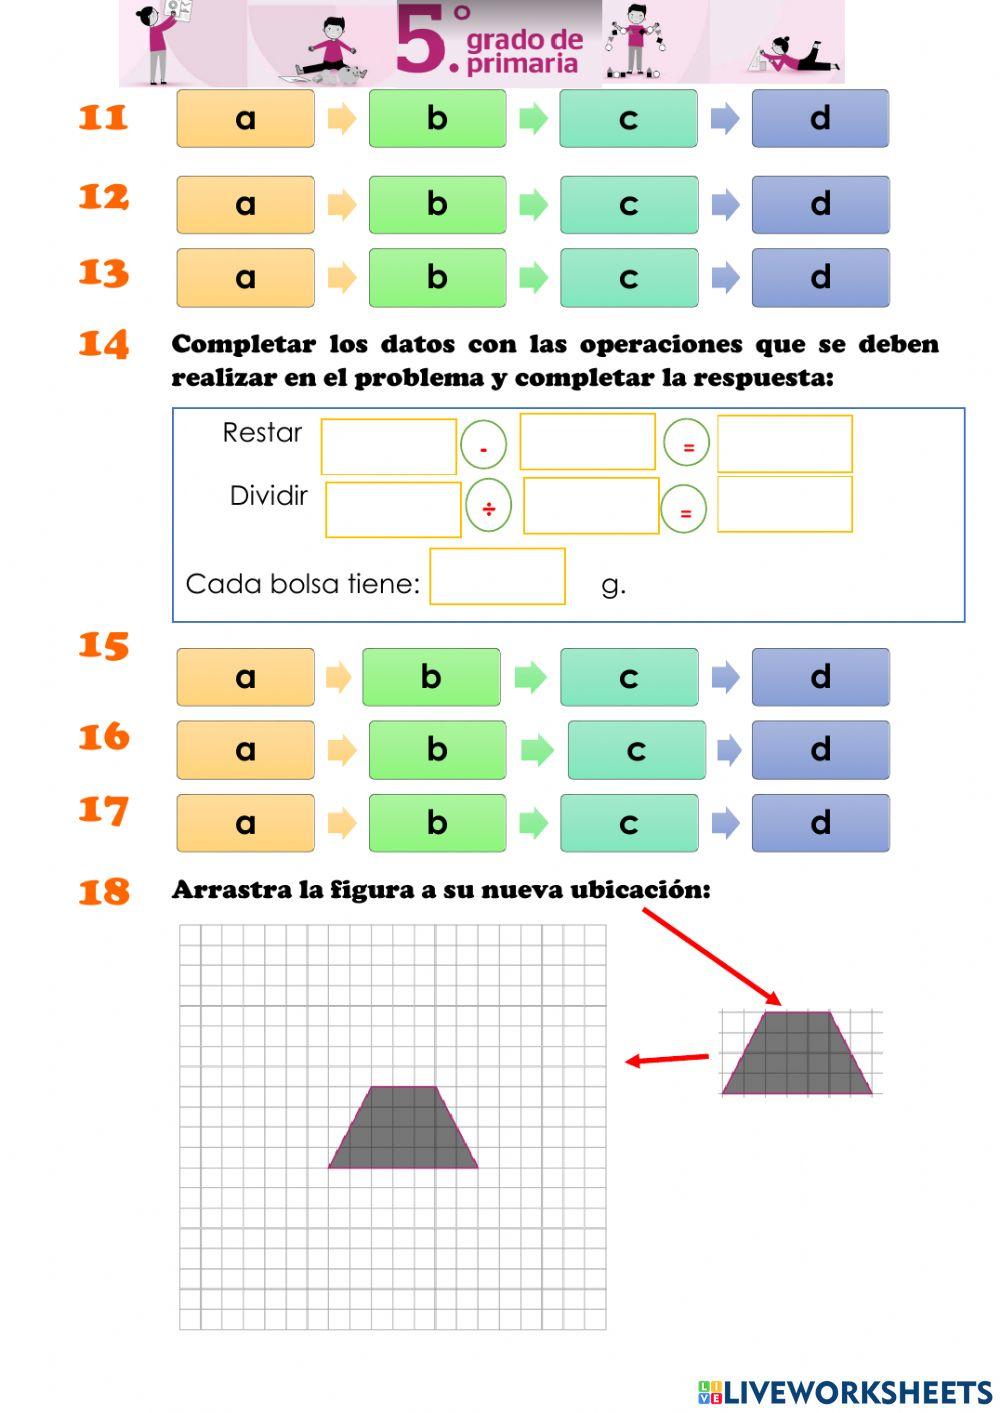 Ficha de respuestas de la prueba diagnostica de matemática